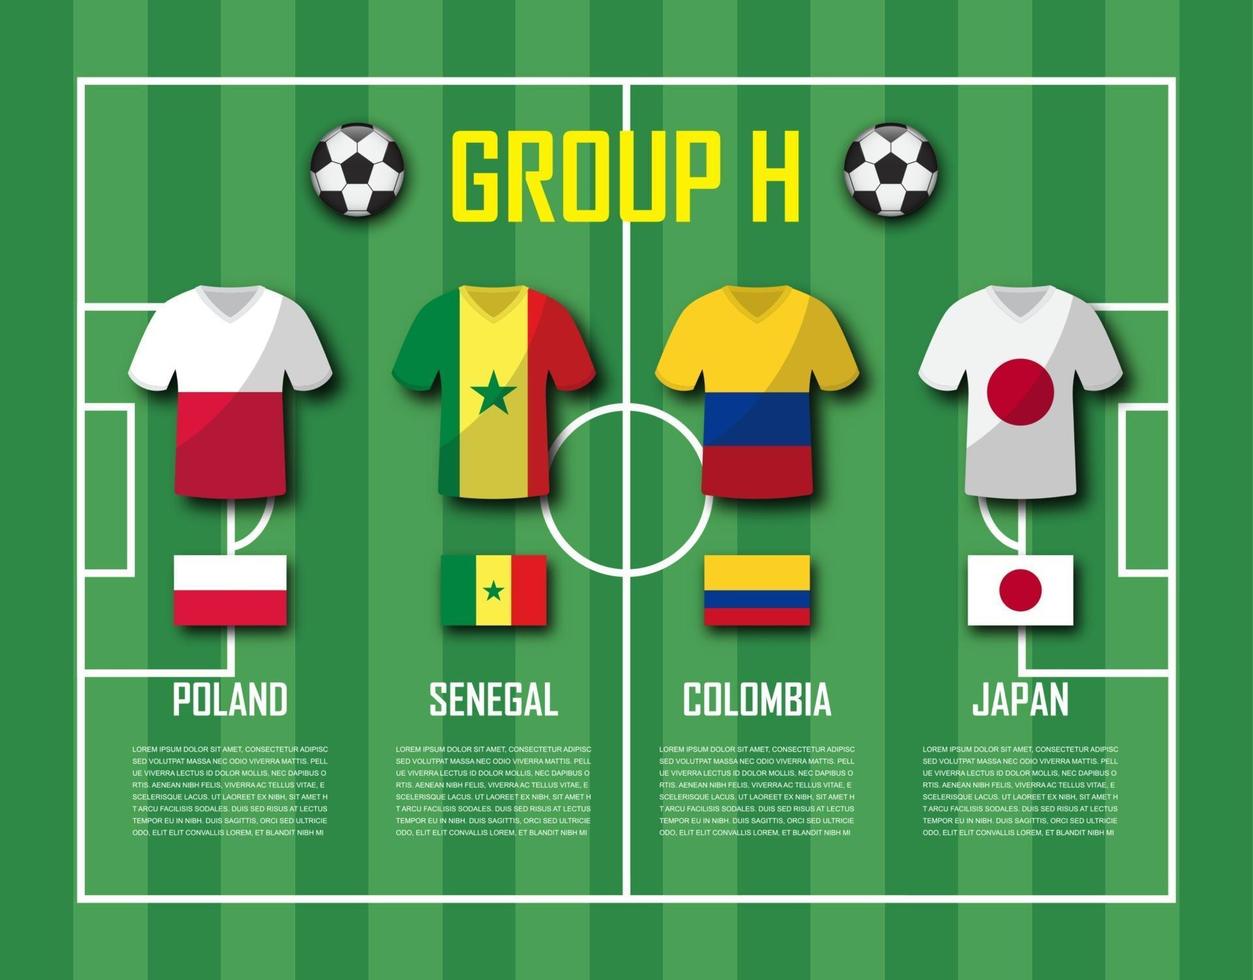 voetbalbeker 2018 teamgroep h voetballers met jersey-uniform en nationale vlaggenvector voor internationaal wereldkampioenschapstoernooi vector